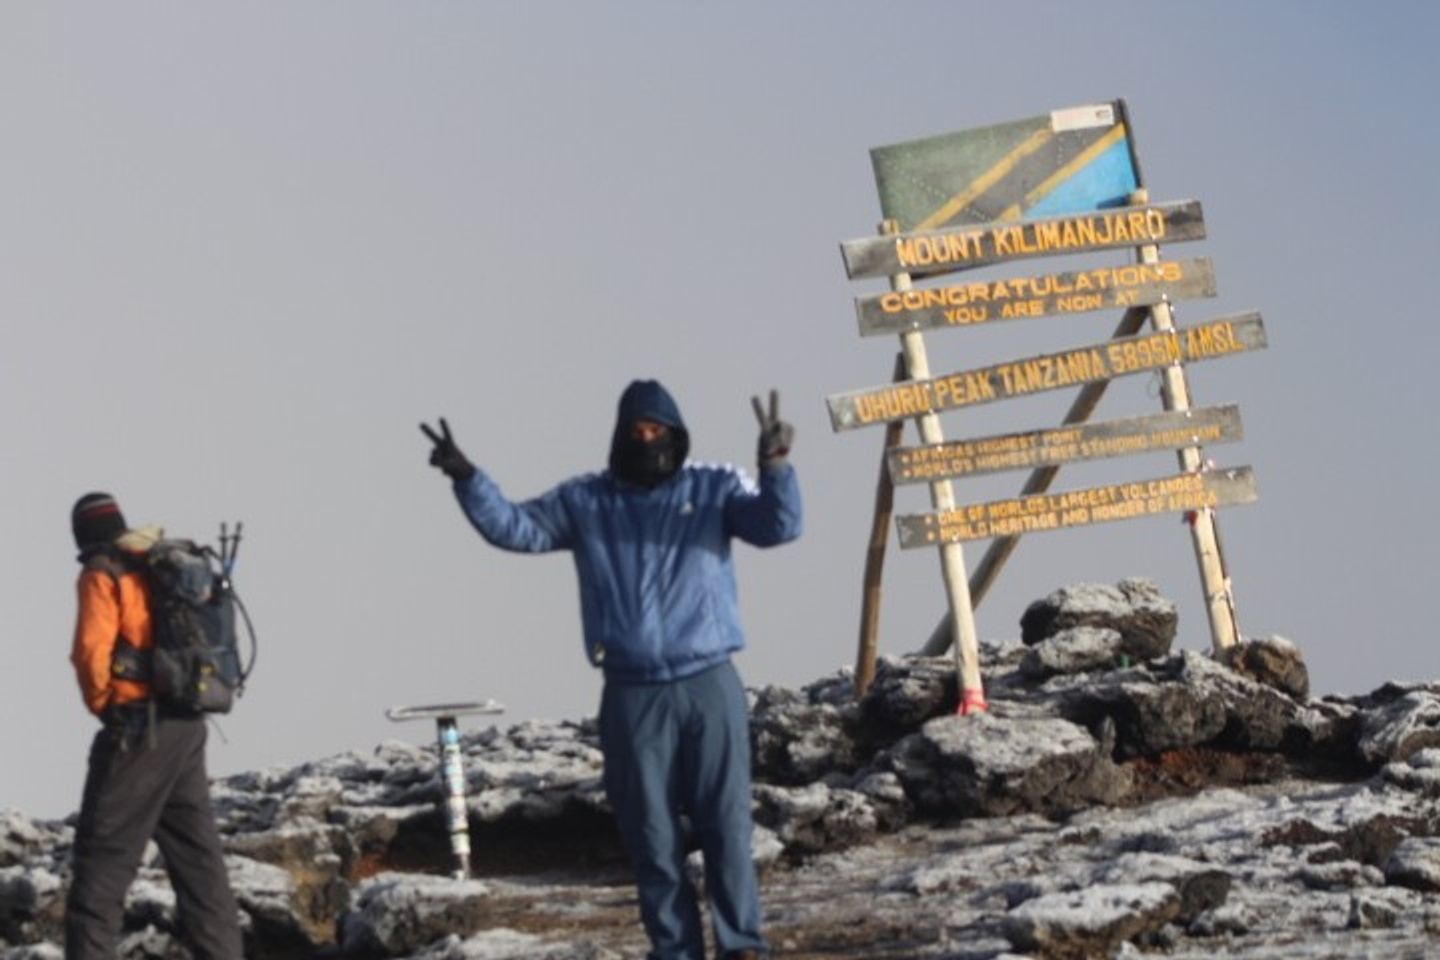 5 Days Kilimanjaro tour by Marangu route